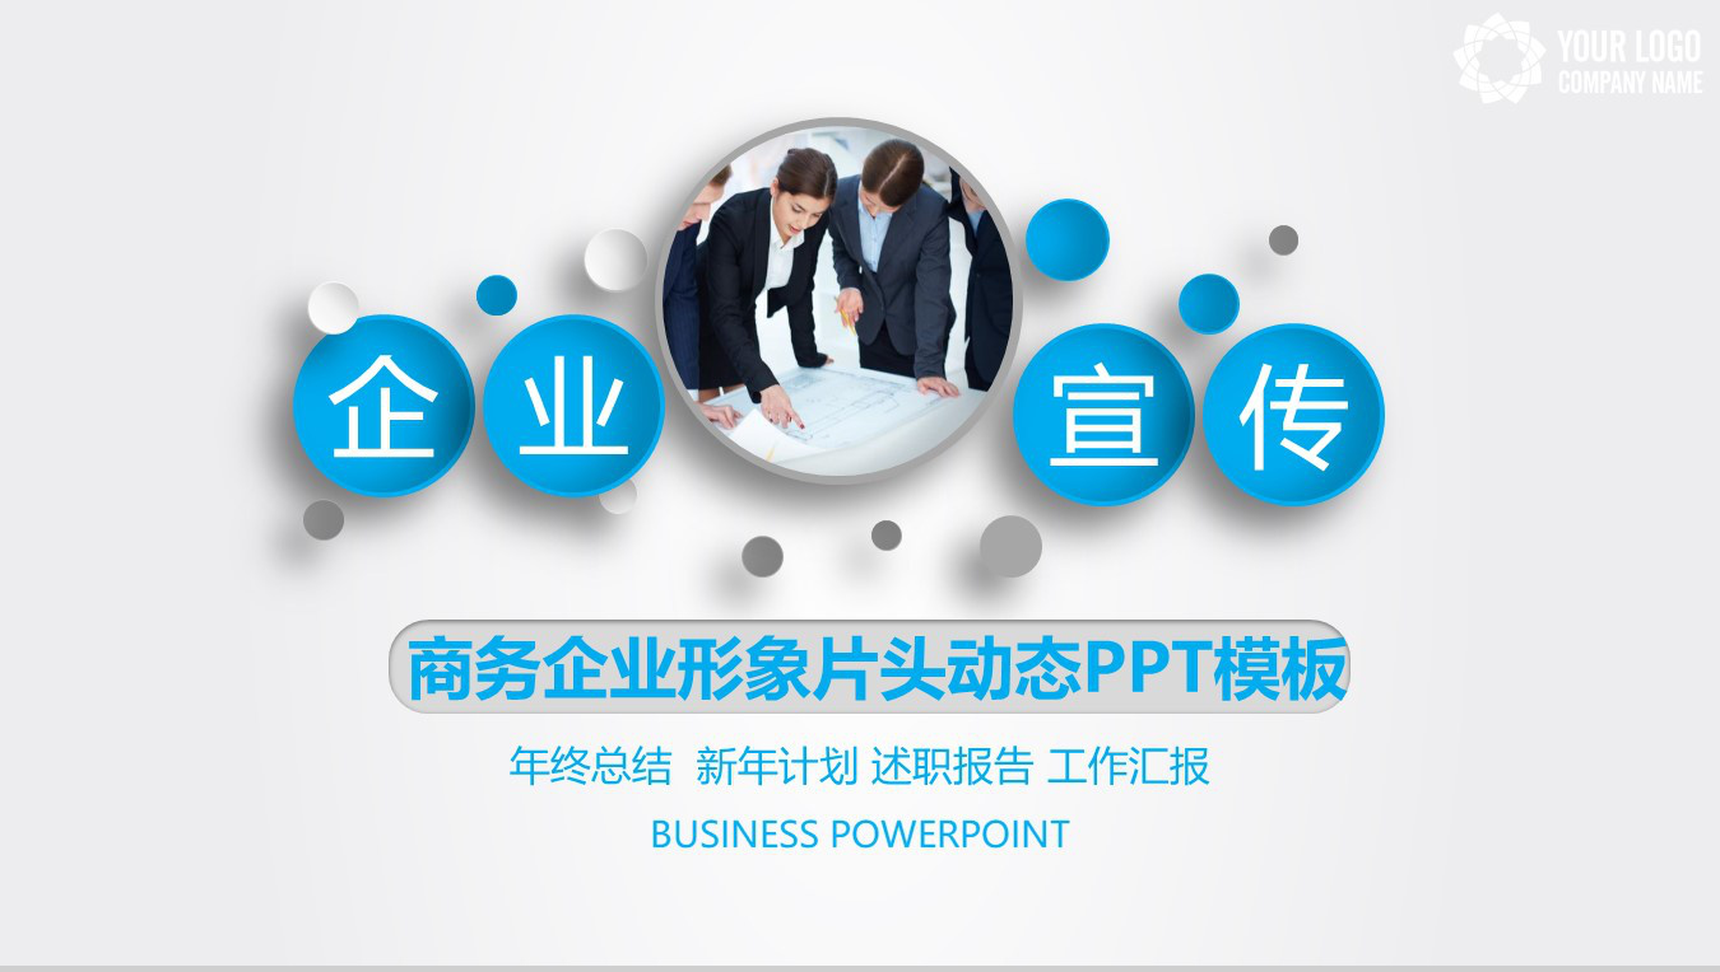 商务企业形象片头动态PPT模板-1